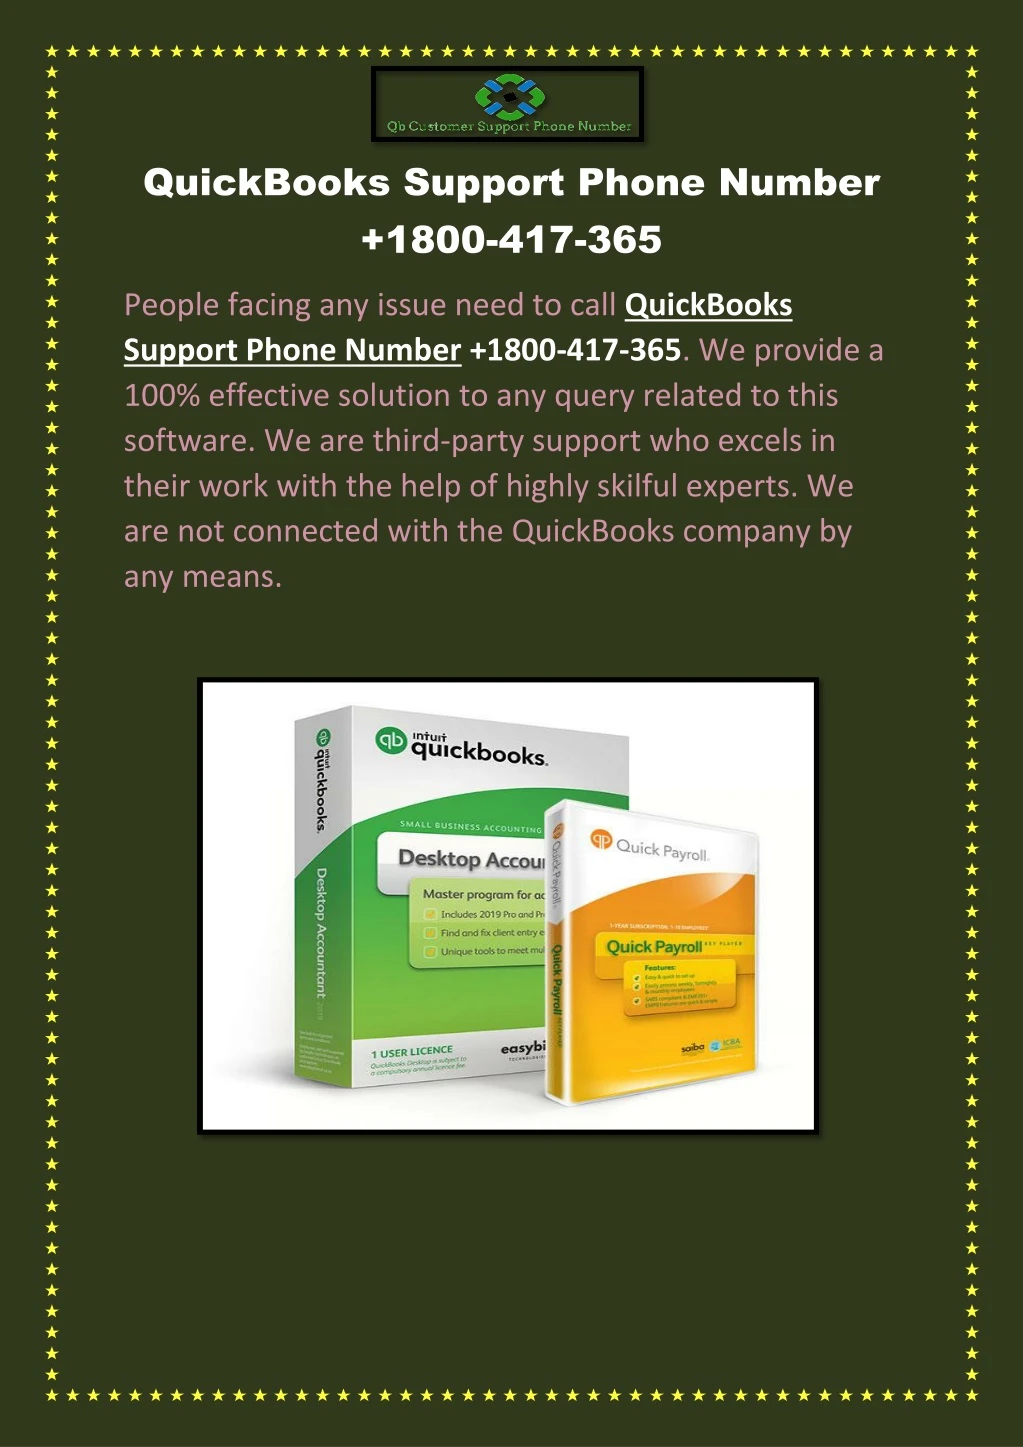 quickbooks support phone number 1800 417 365